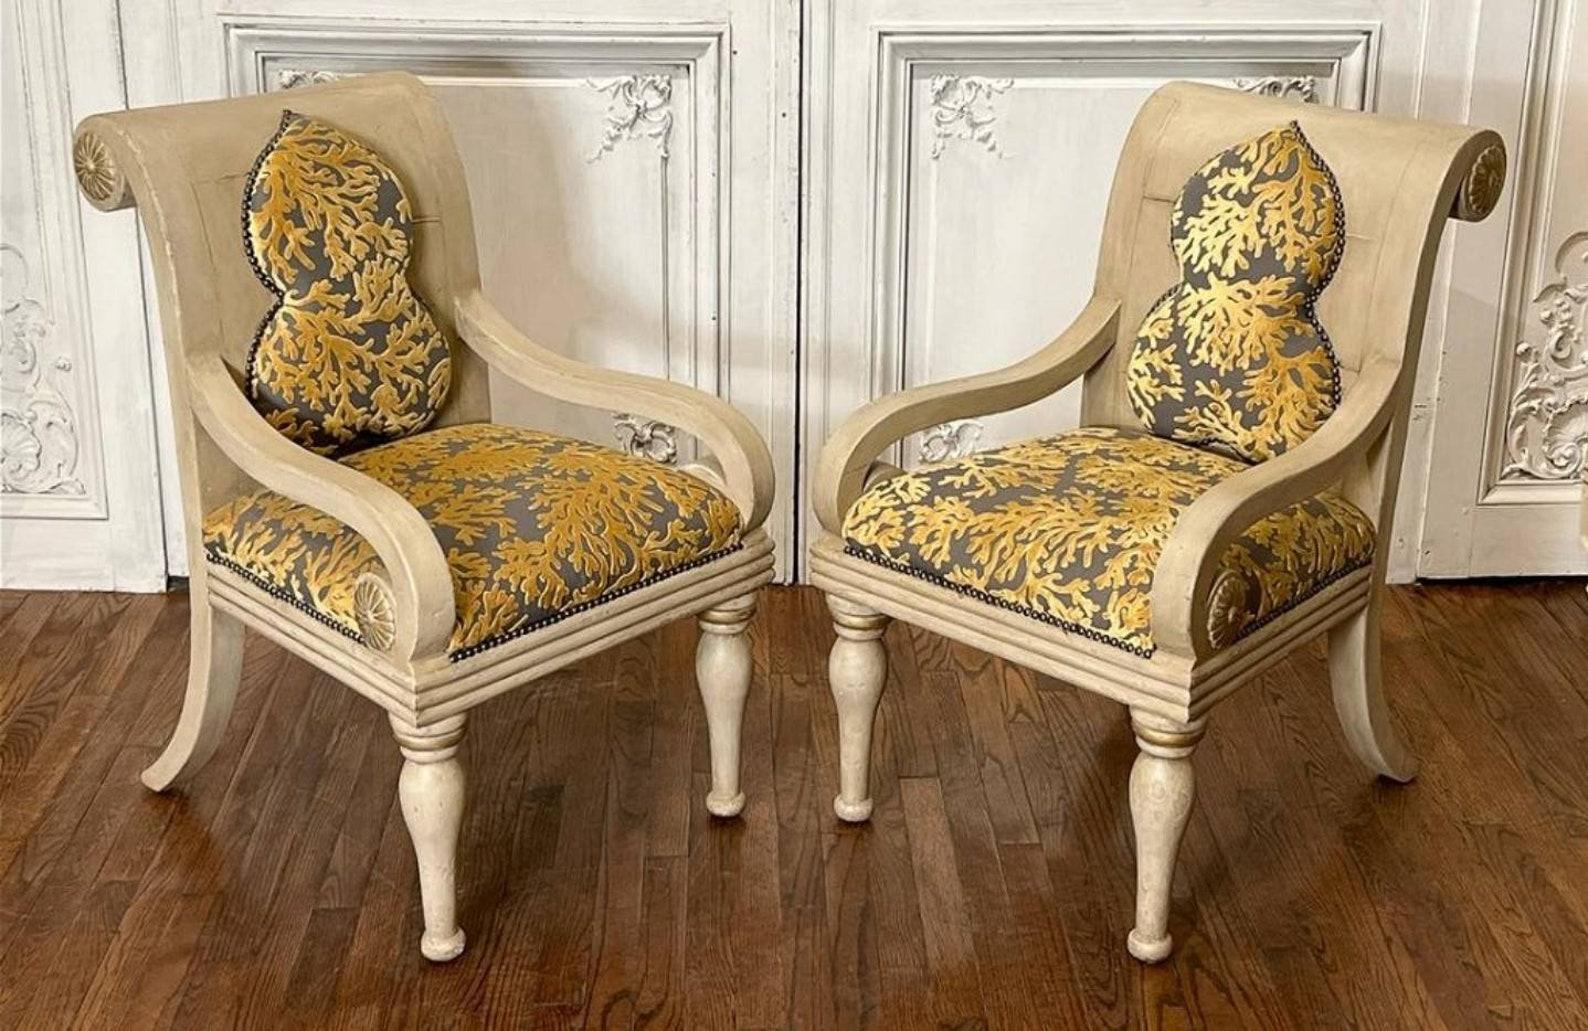 Une superbe paire de fauteuils à enroulement néoclassiques italiens sculptés et peints à la main, entièrement restaurés dans un style contemporain du 21ème siècle avec un goût moderne anglo-indien. Chaque chaise est dotée d'un dossier et d'un bras